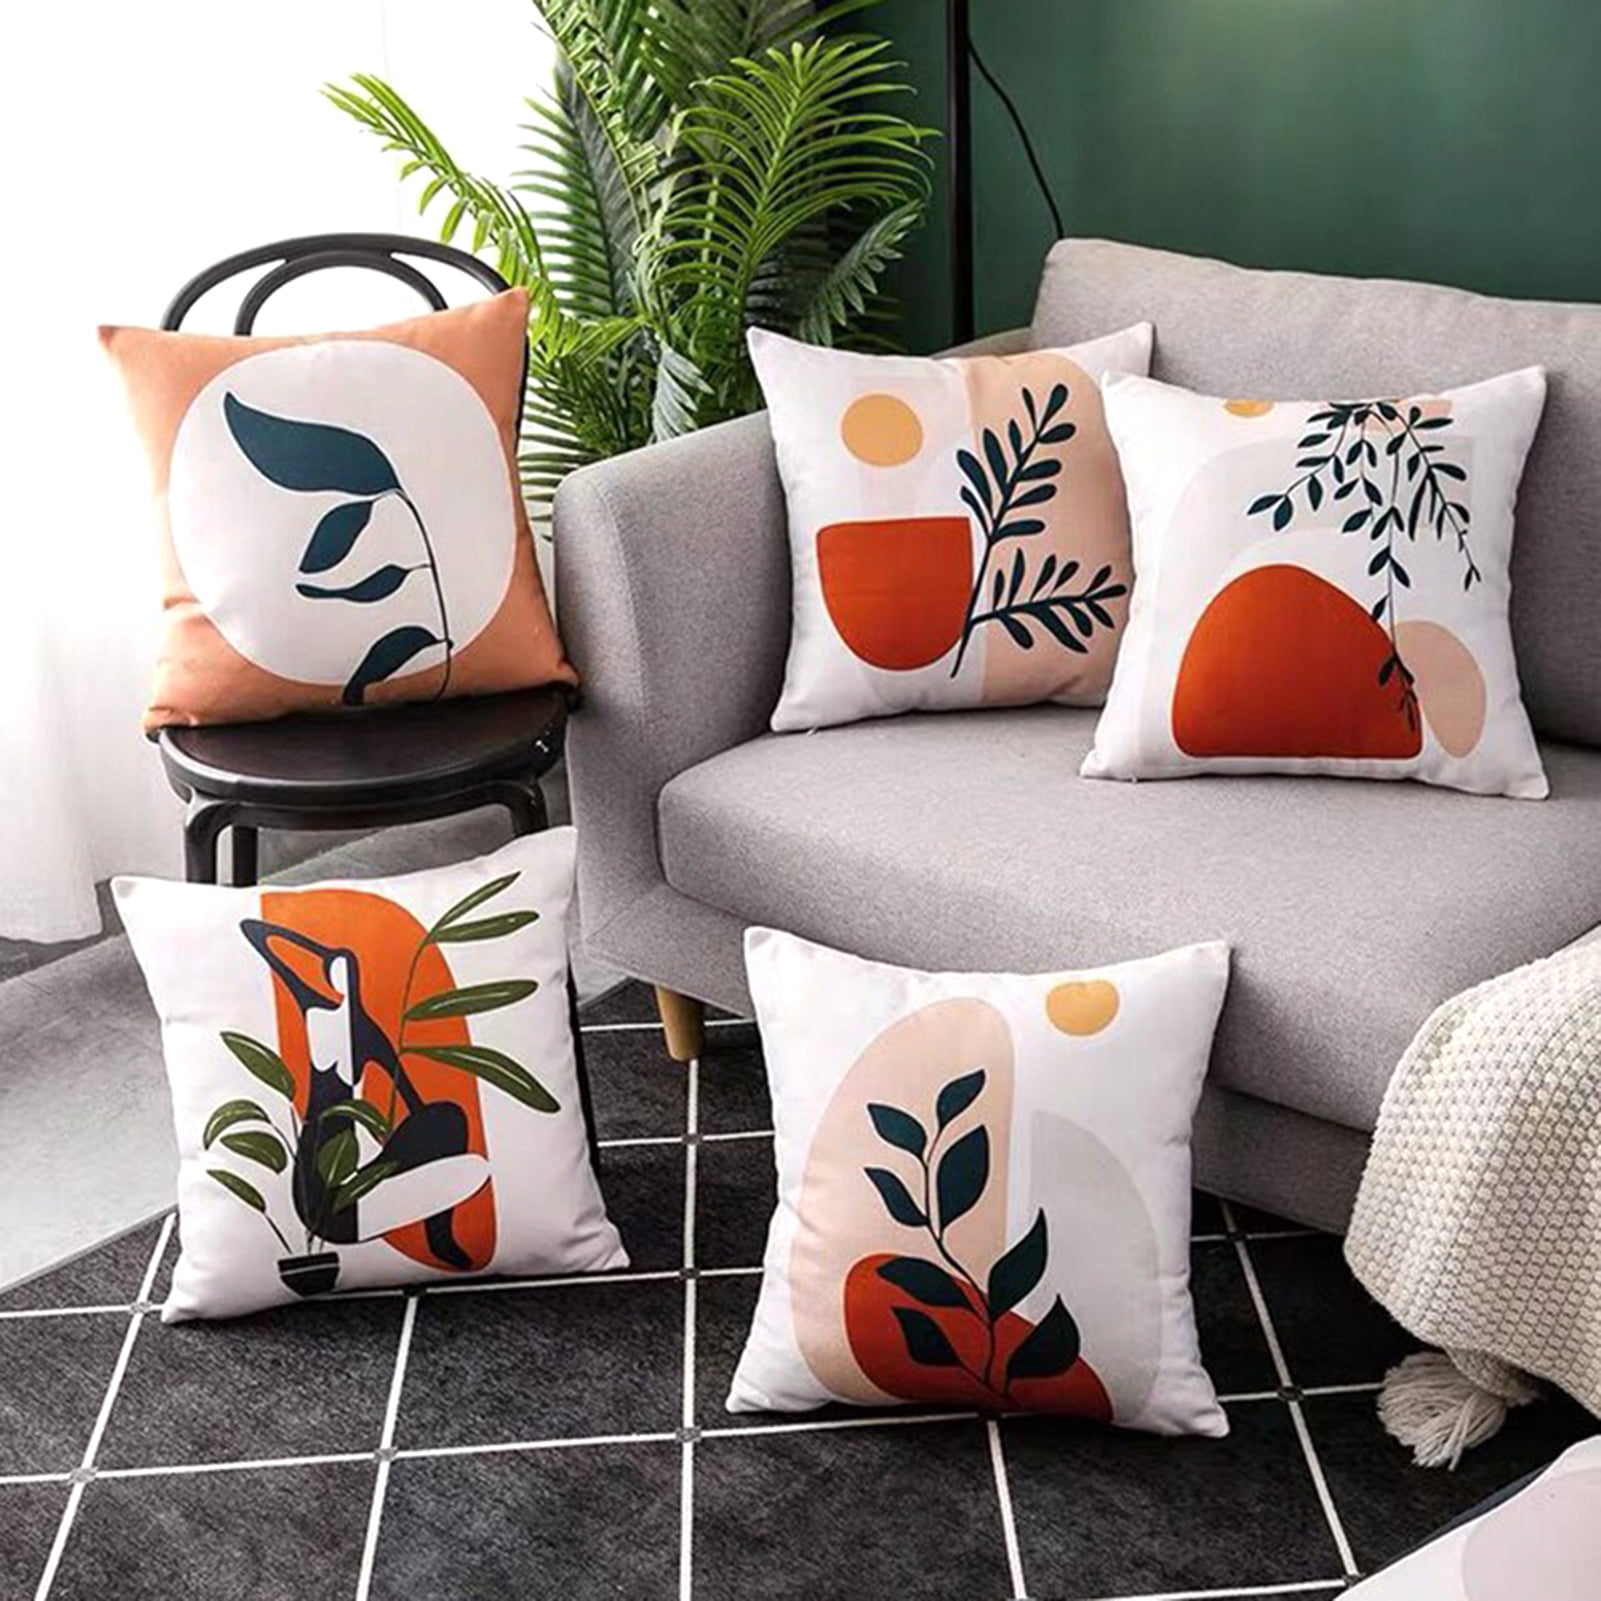 Details about   Plant Pillow Sham Decorative Pillowcase 3 Sizes for Bedroom Decor 